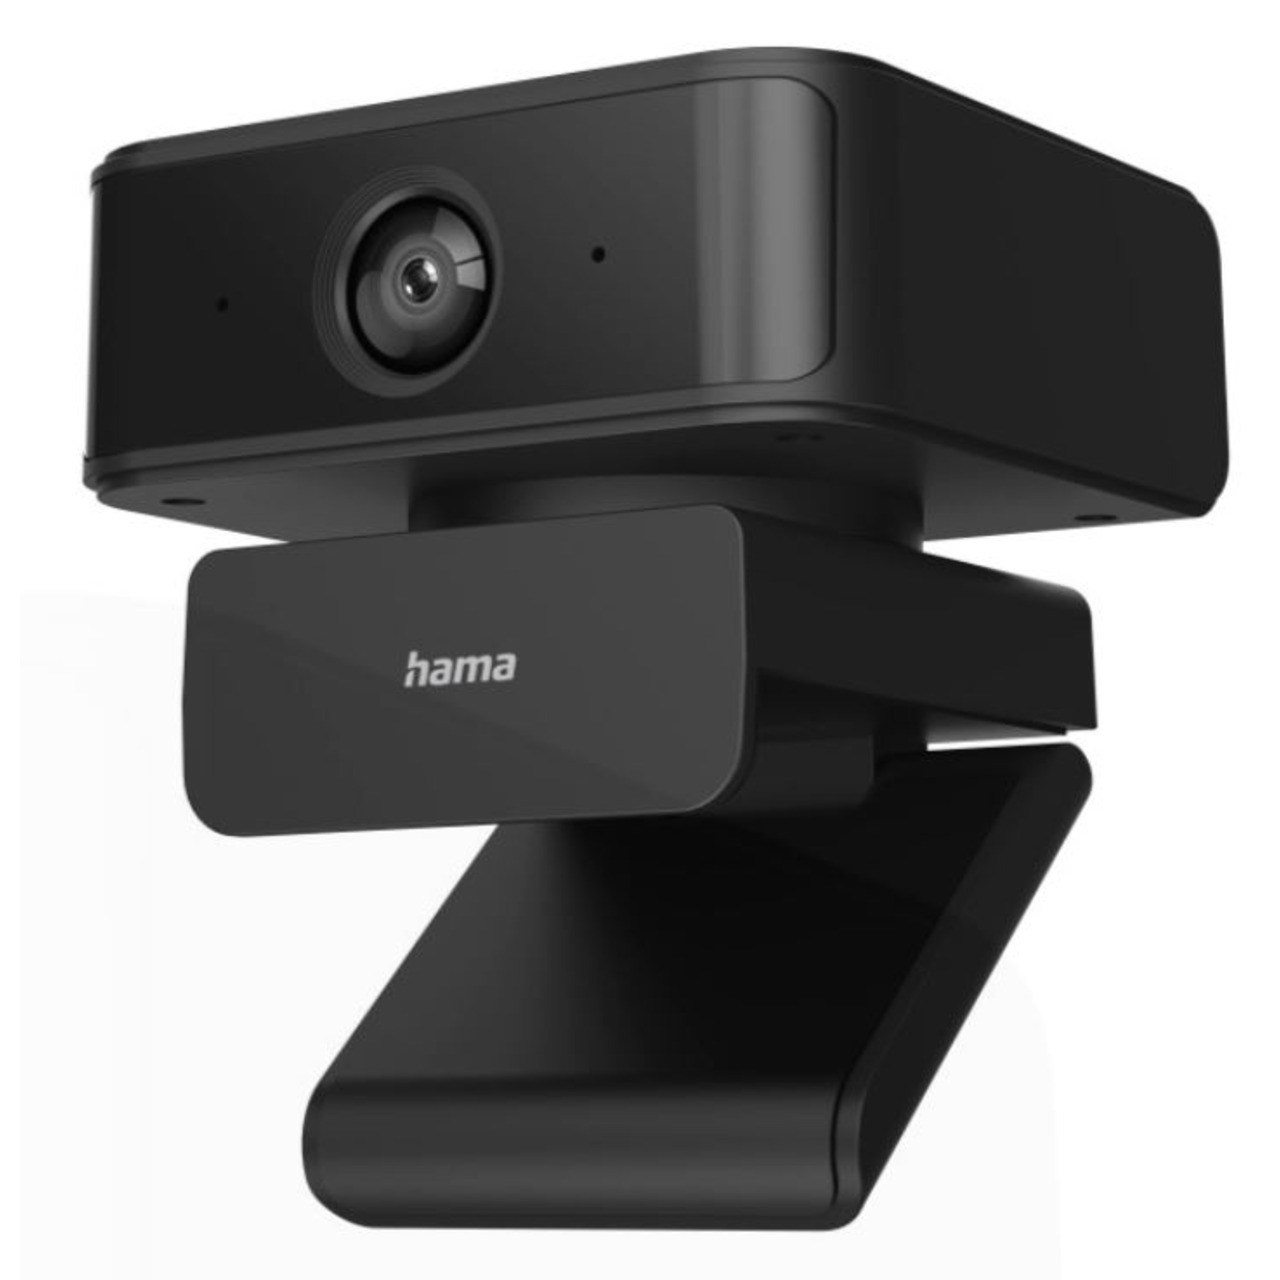 hama PC-Webcam C-650- 2 MP- mit autom- Gesichtsverfolgung- 1080p- 30 fps- 130- Blickwinkel unter PC-Hardware